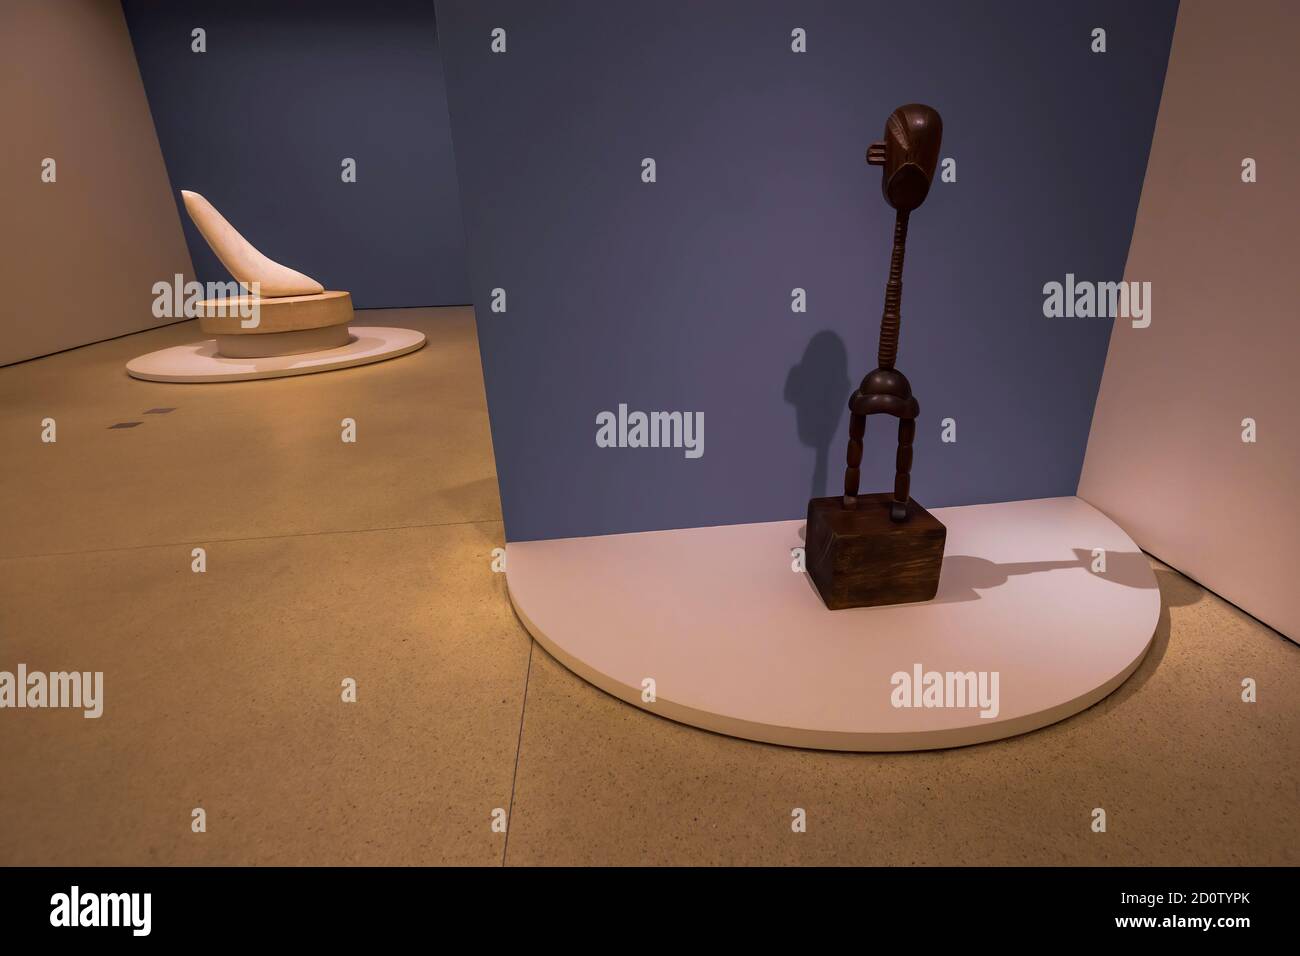 New York, États-Unis d'Amérique - 8 décembre 2019. Sculptures de Constantin Brancusi dans le célèbre musée Guggenheim dans la 5ème Avenue à New York Banque D'Images